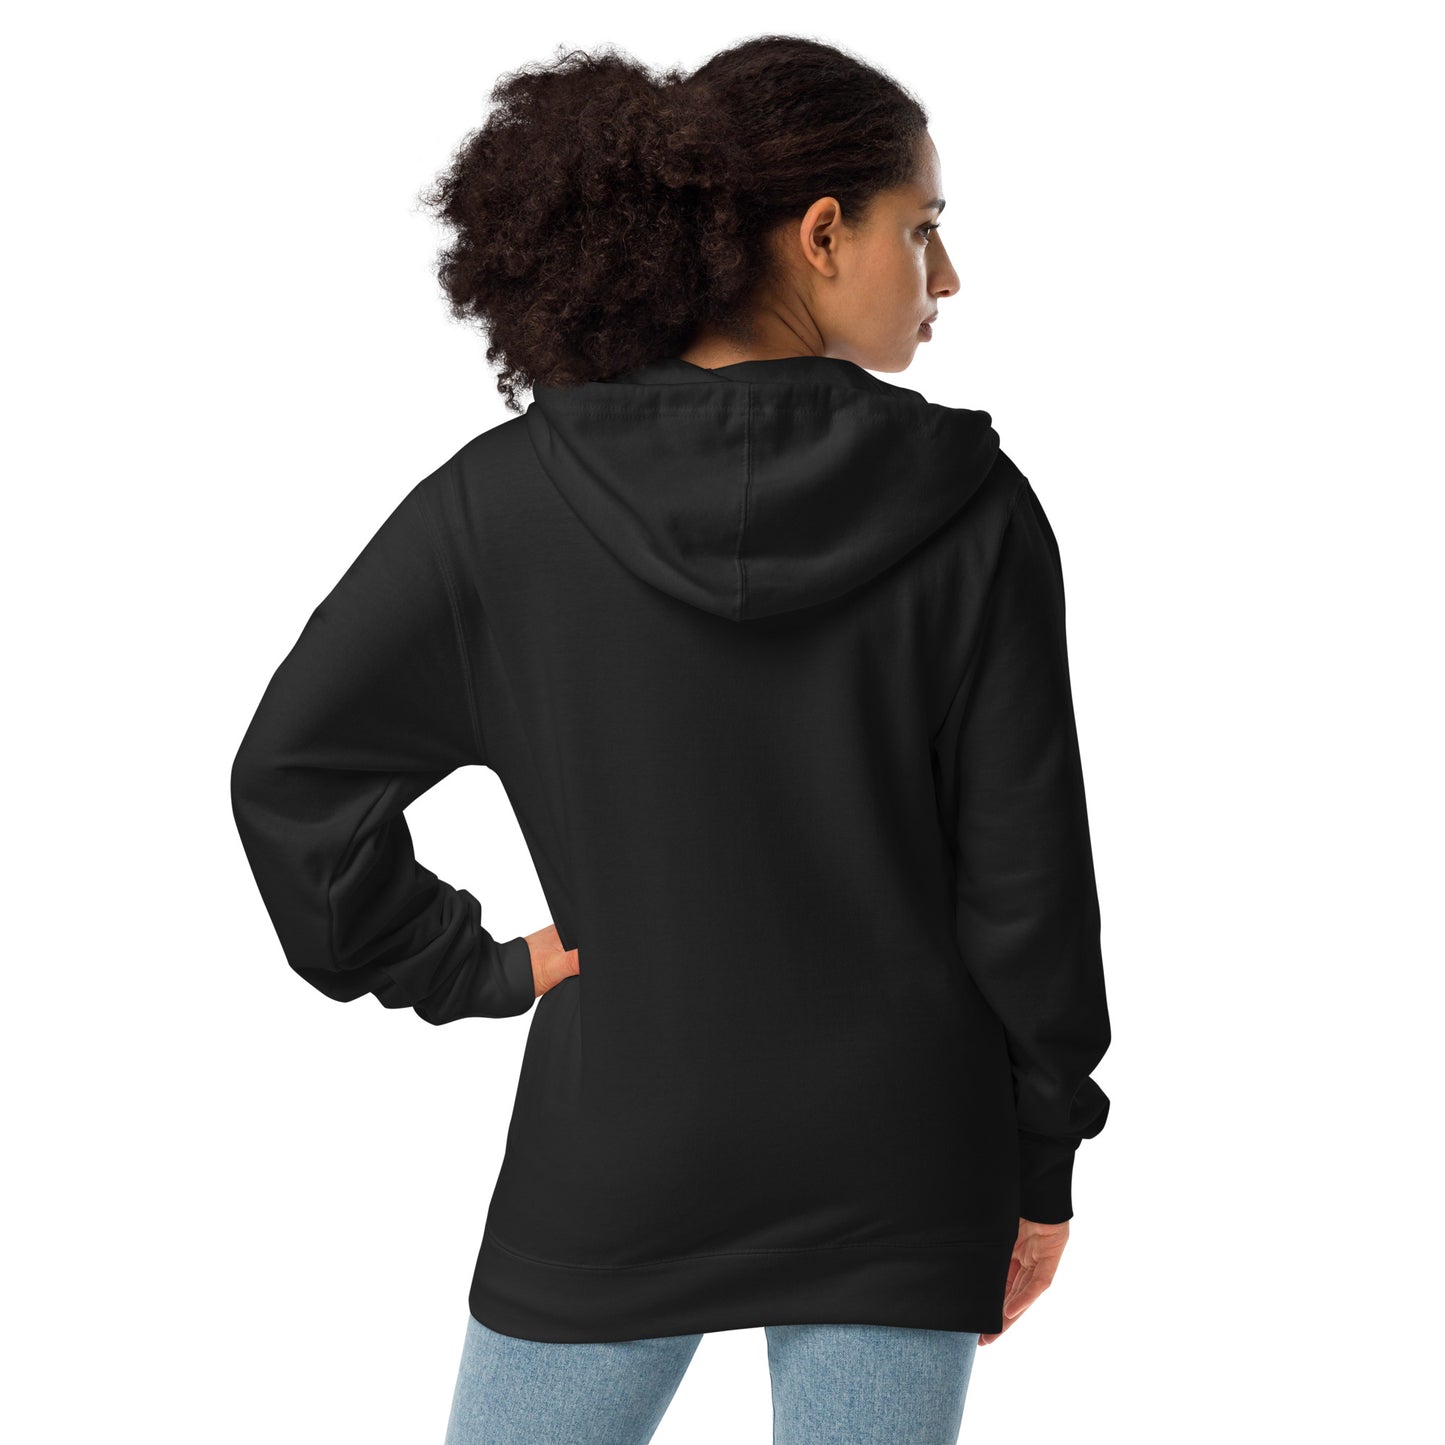 Next Level Unisex fleece zip up hoodie